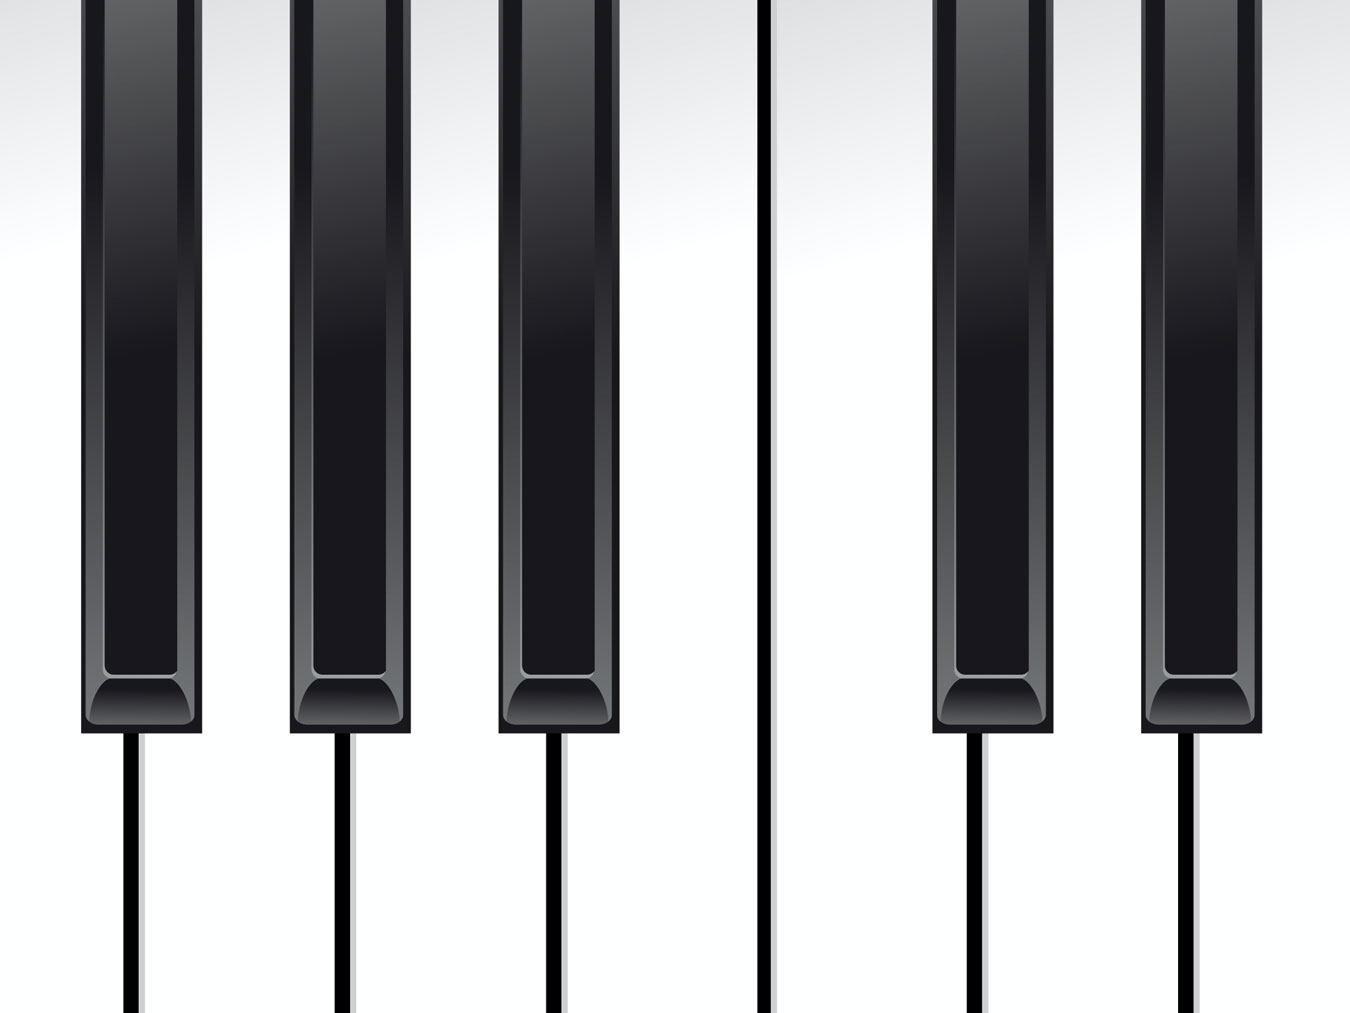 Close Up of Piano Keyboard